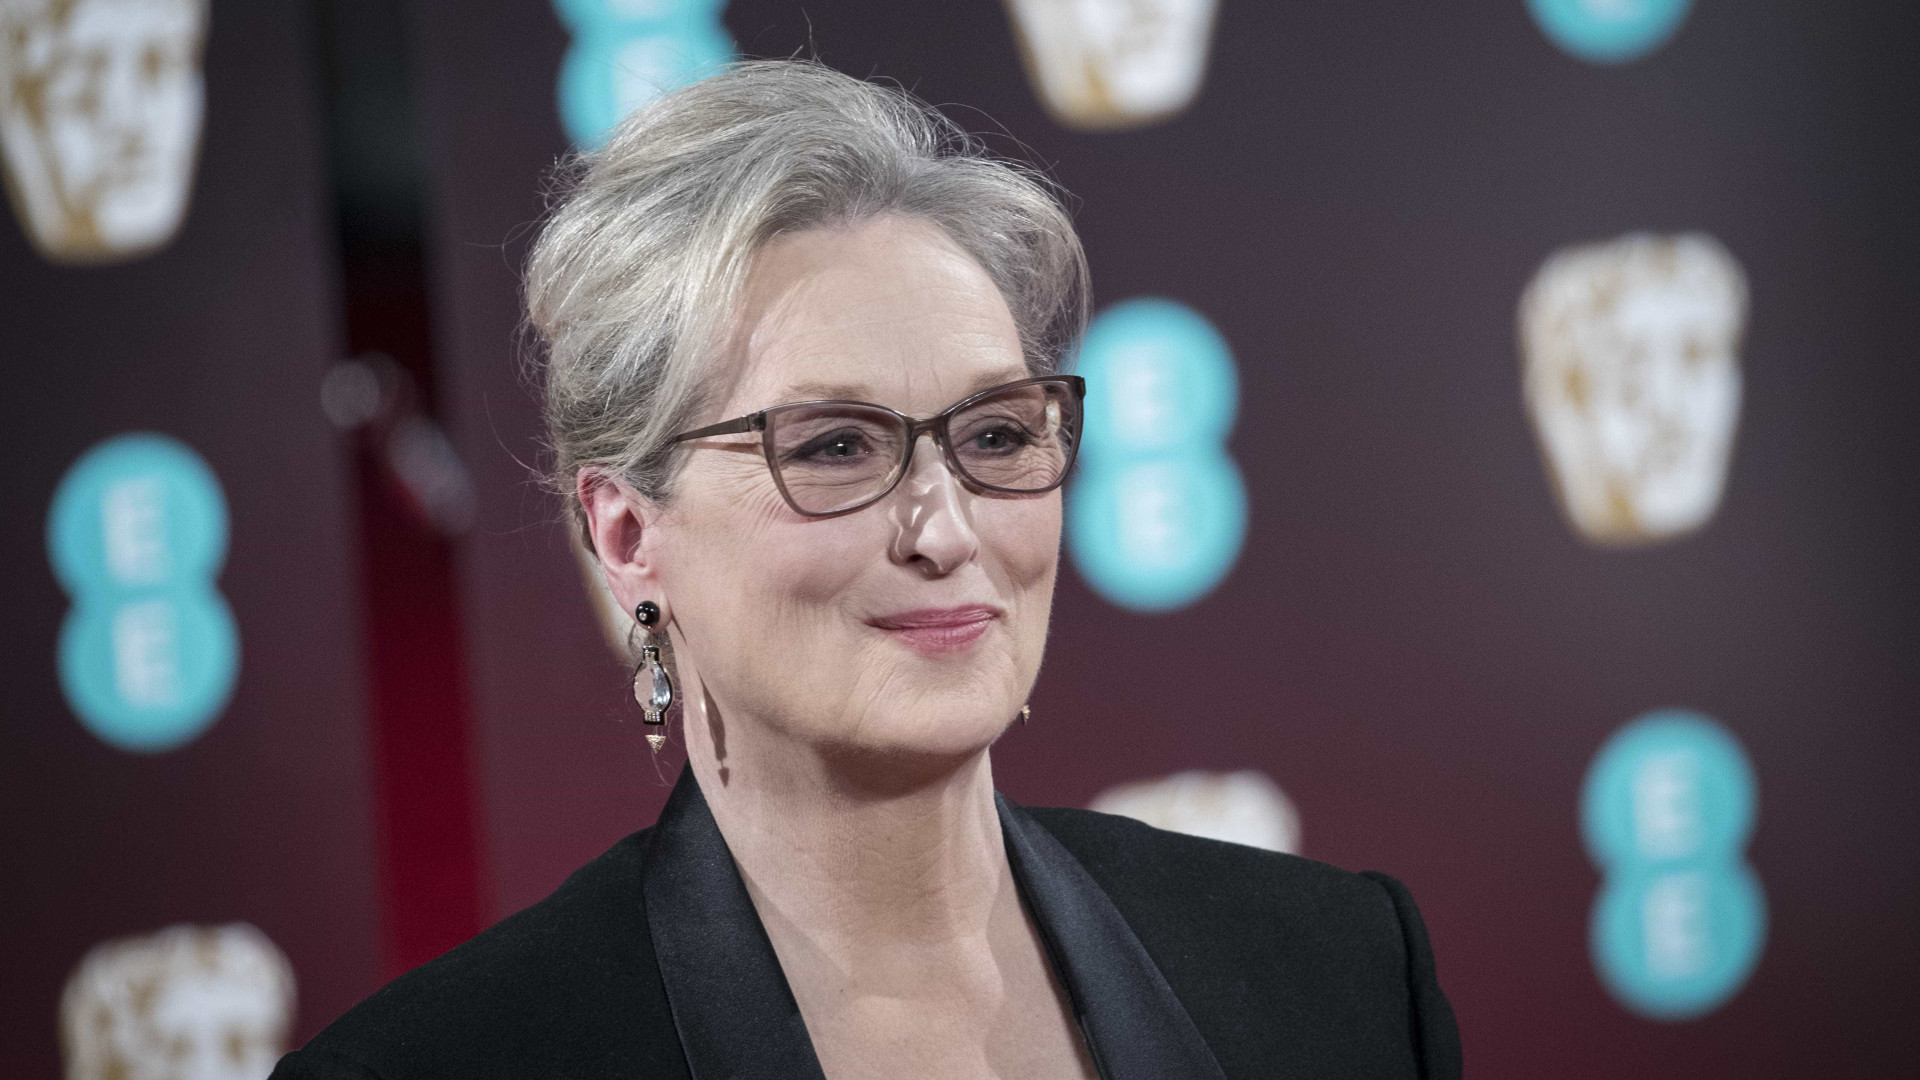 Crítica: o melhor e o pior da carreira de Meryl Streep